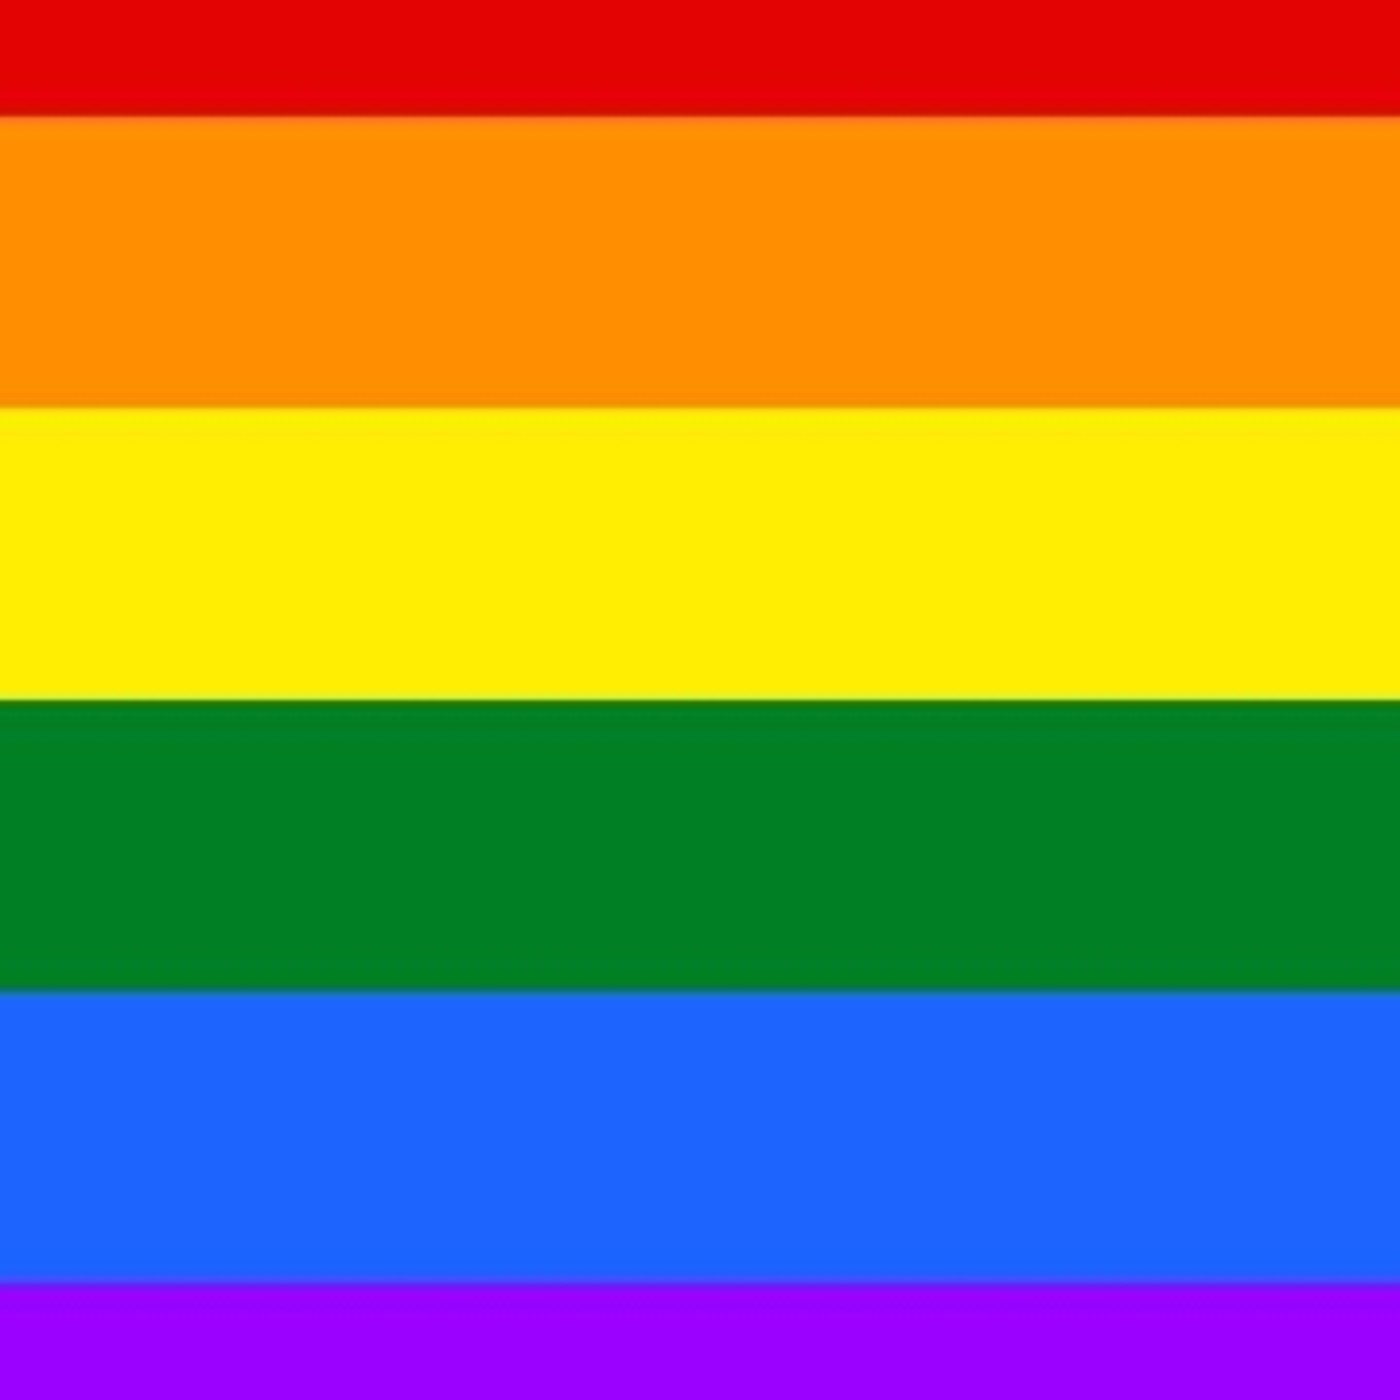 13#PORTUGUÉS FÁCIL - Mês do Orgulho LGBTQ+